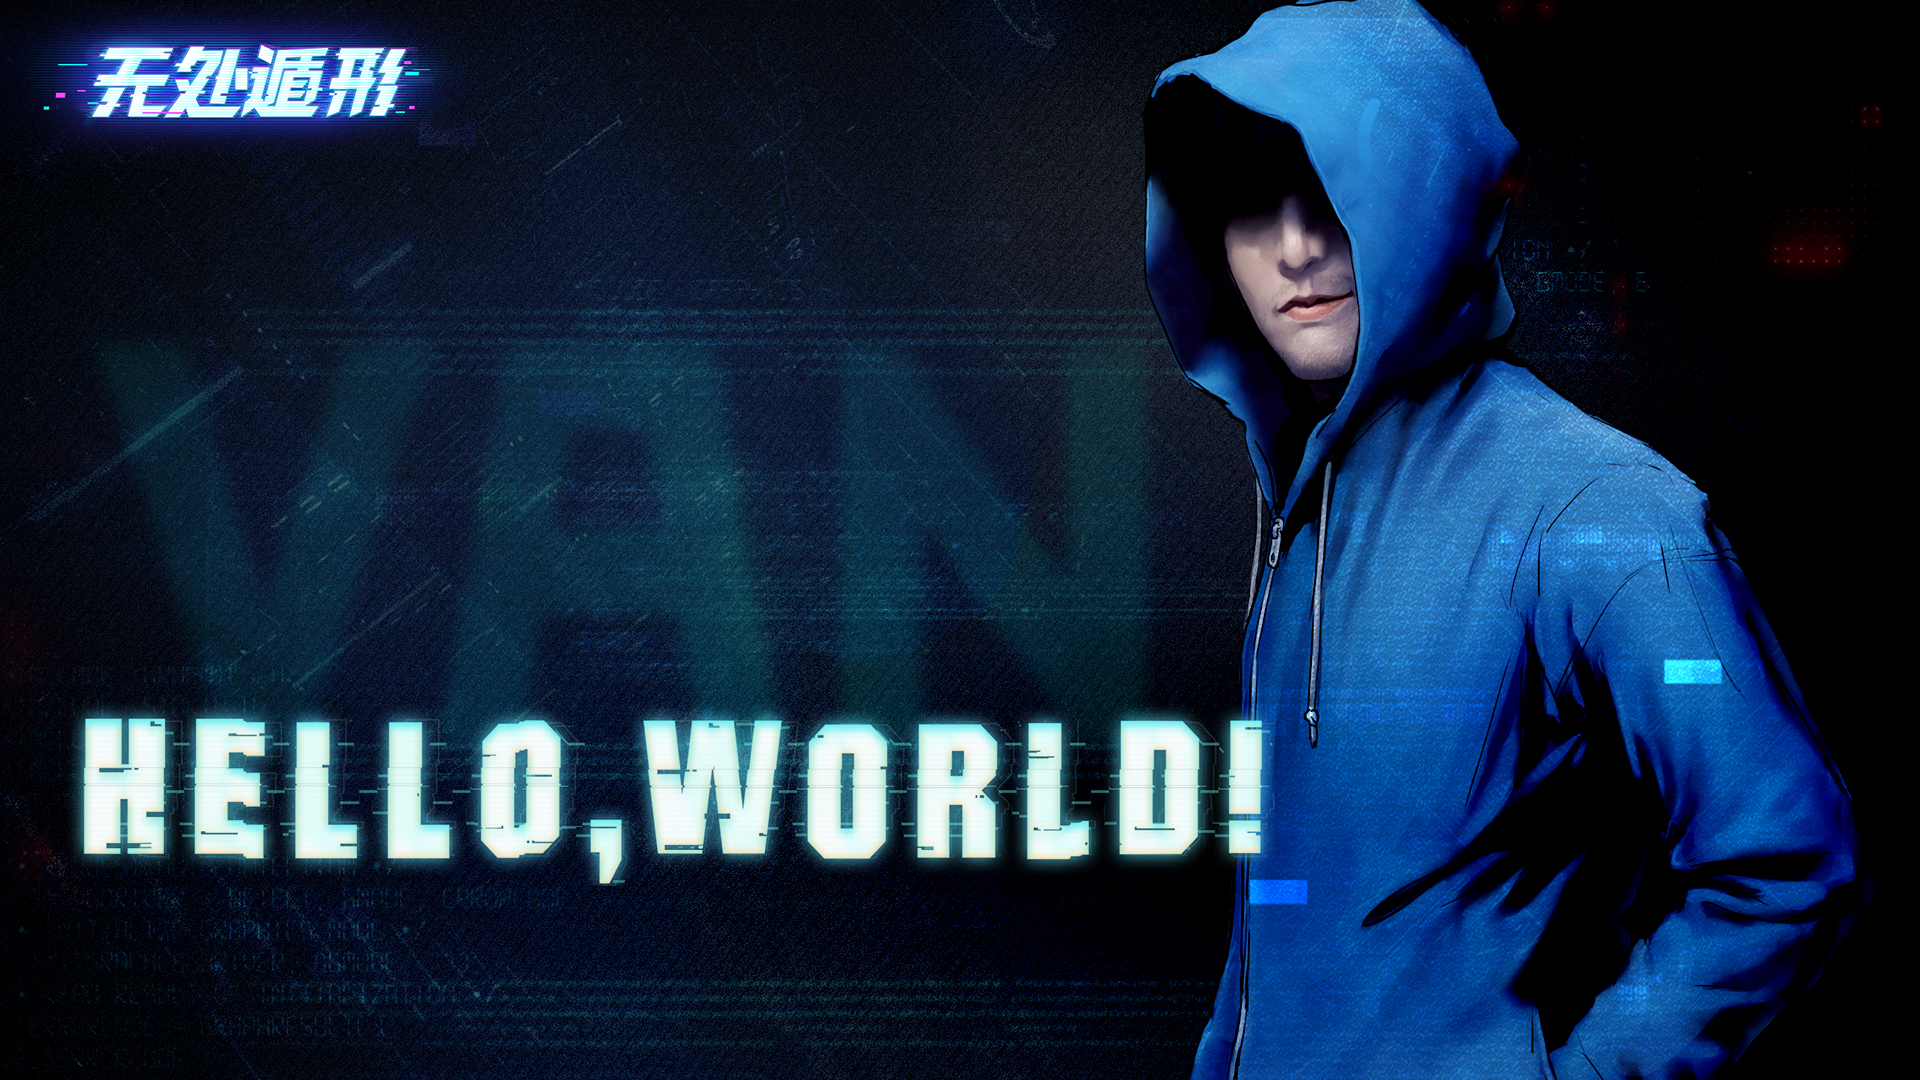 《无处遁形》新DLC发布公告 - “Hello World!”